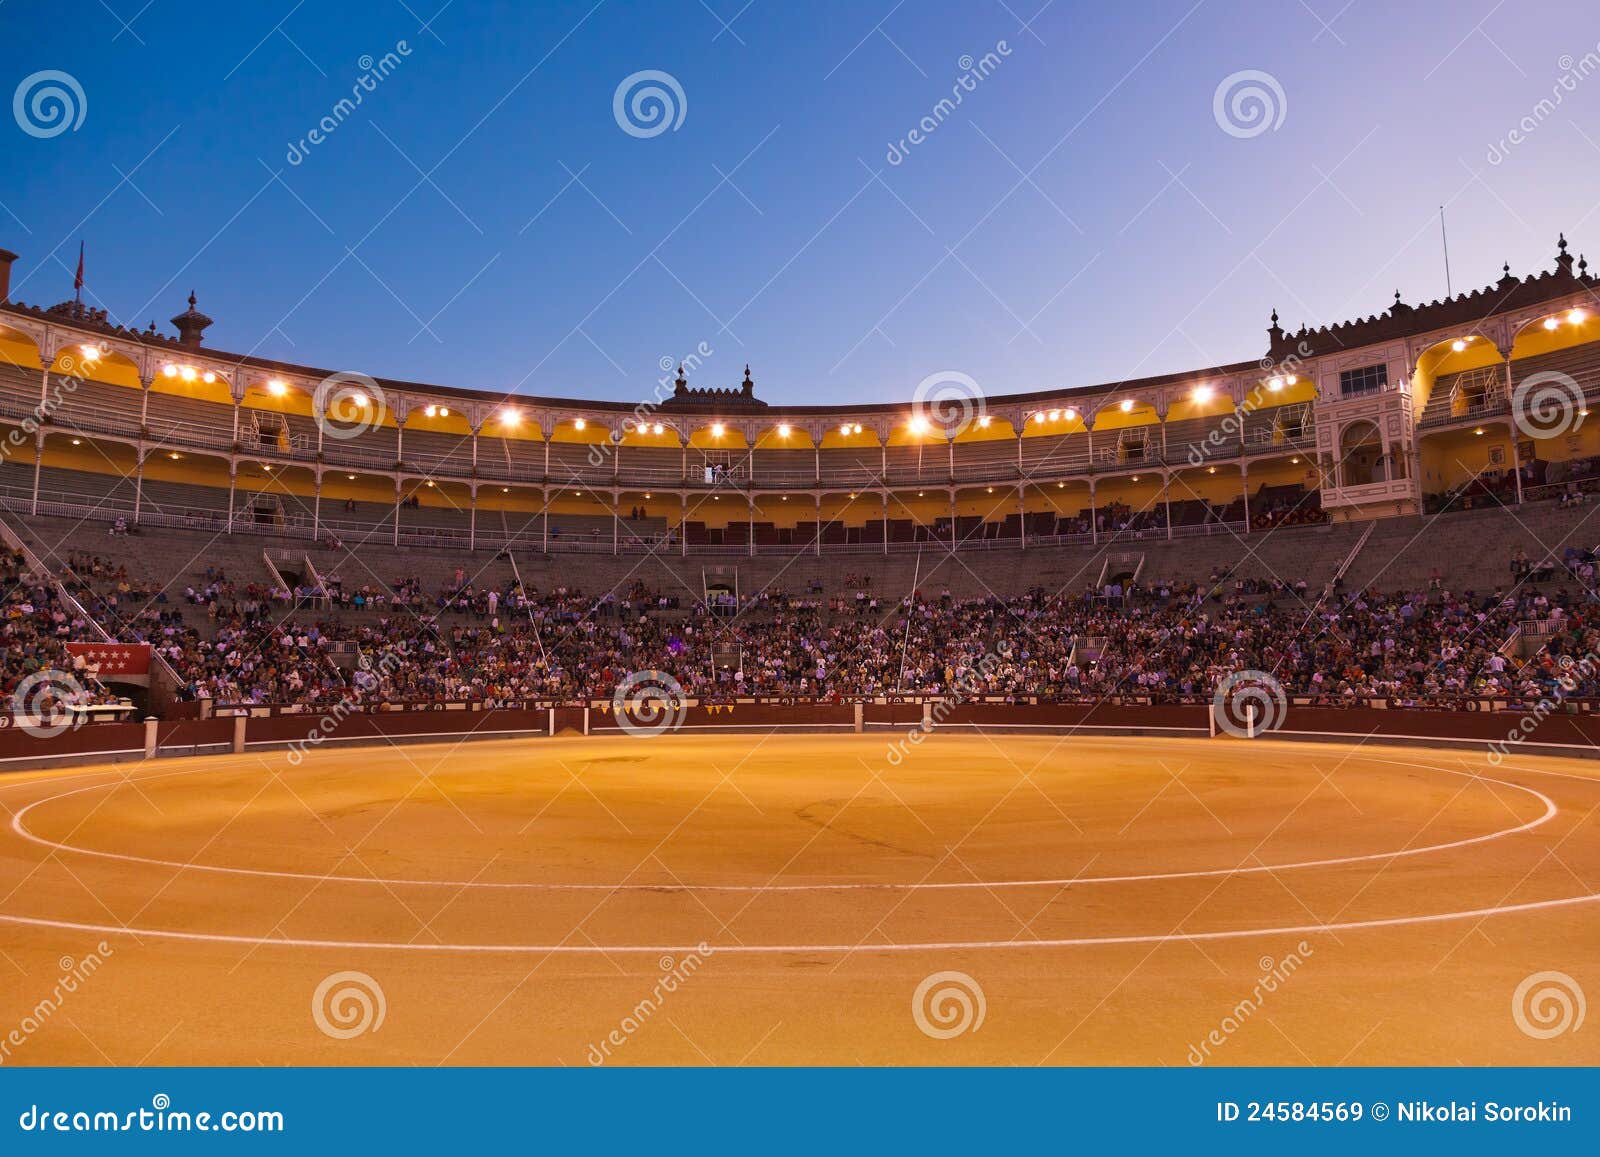 bullfighting arena corrida at madrid spain